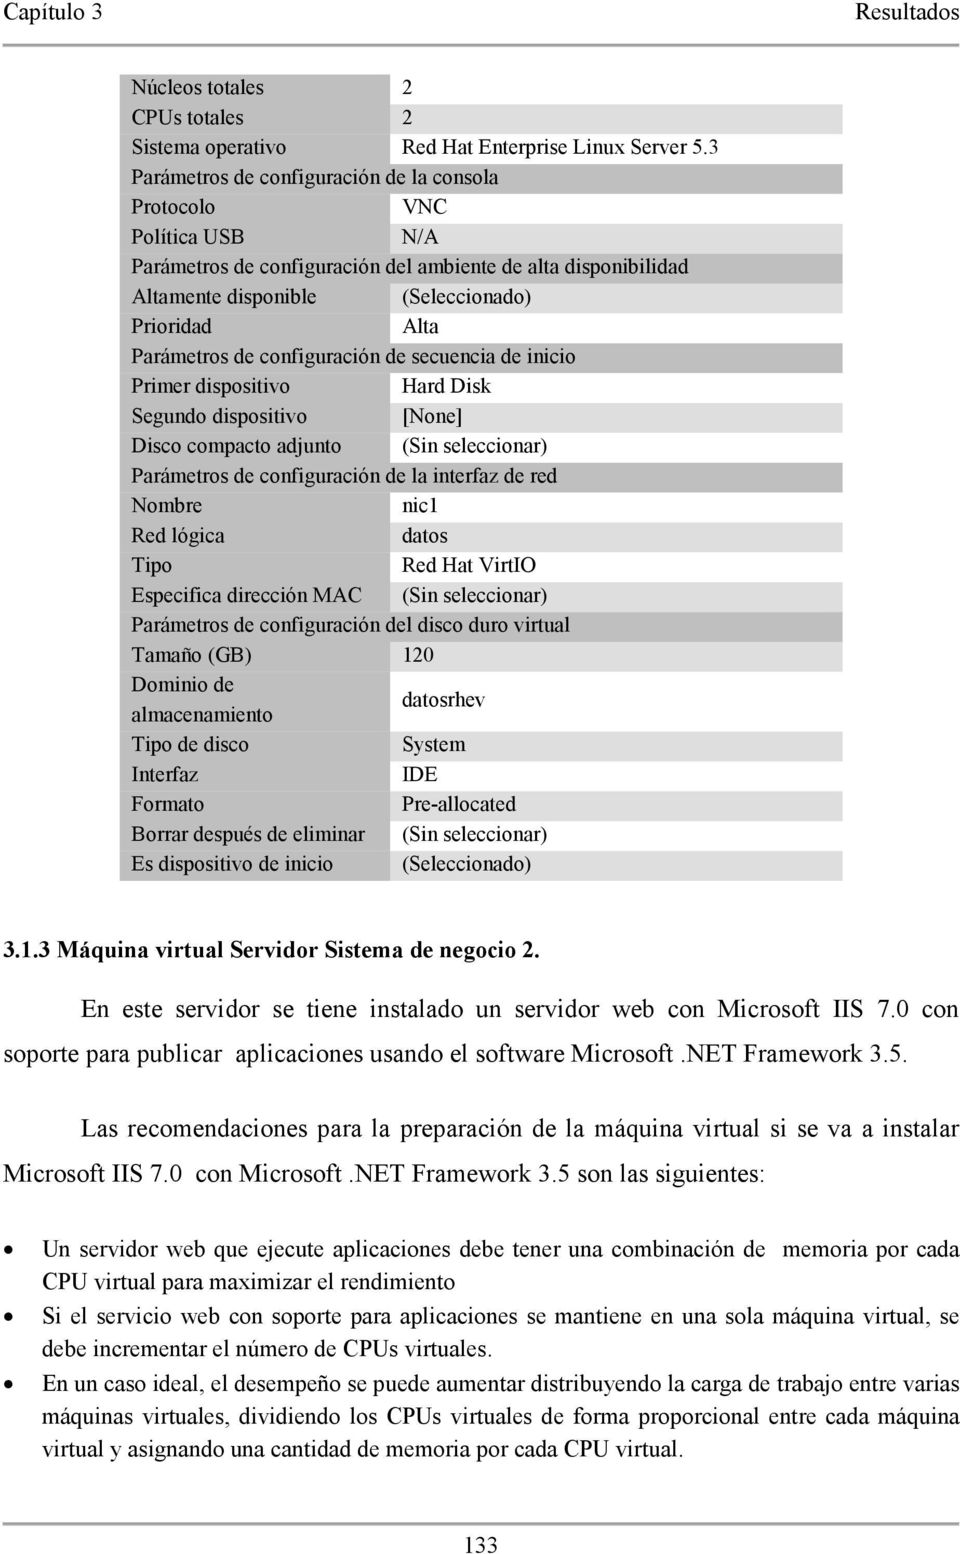 Las recomendaciones para la preparación de la máquina virtual si se va a instalar Microsoft IIS 7.0 con Microsoft.NET Framework 3.